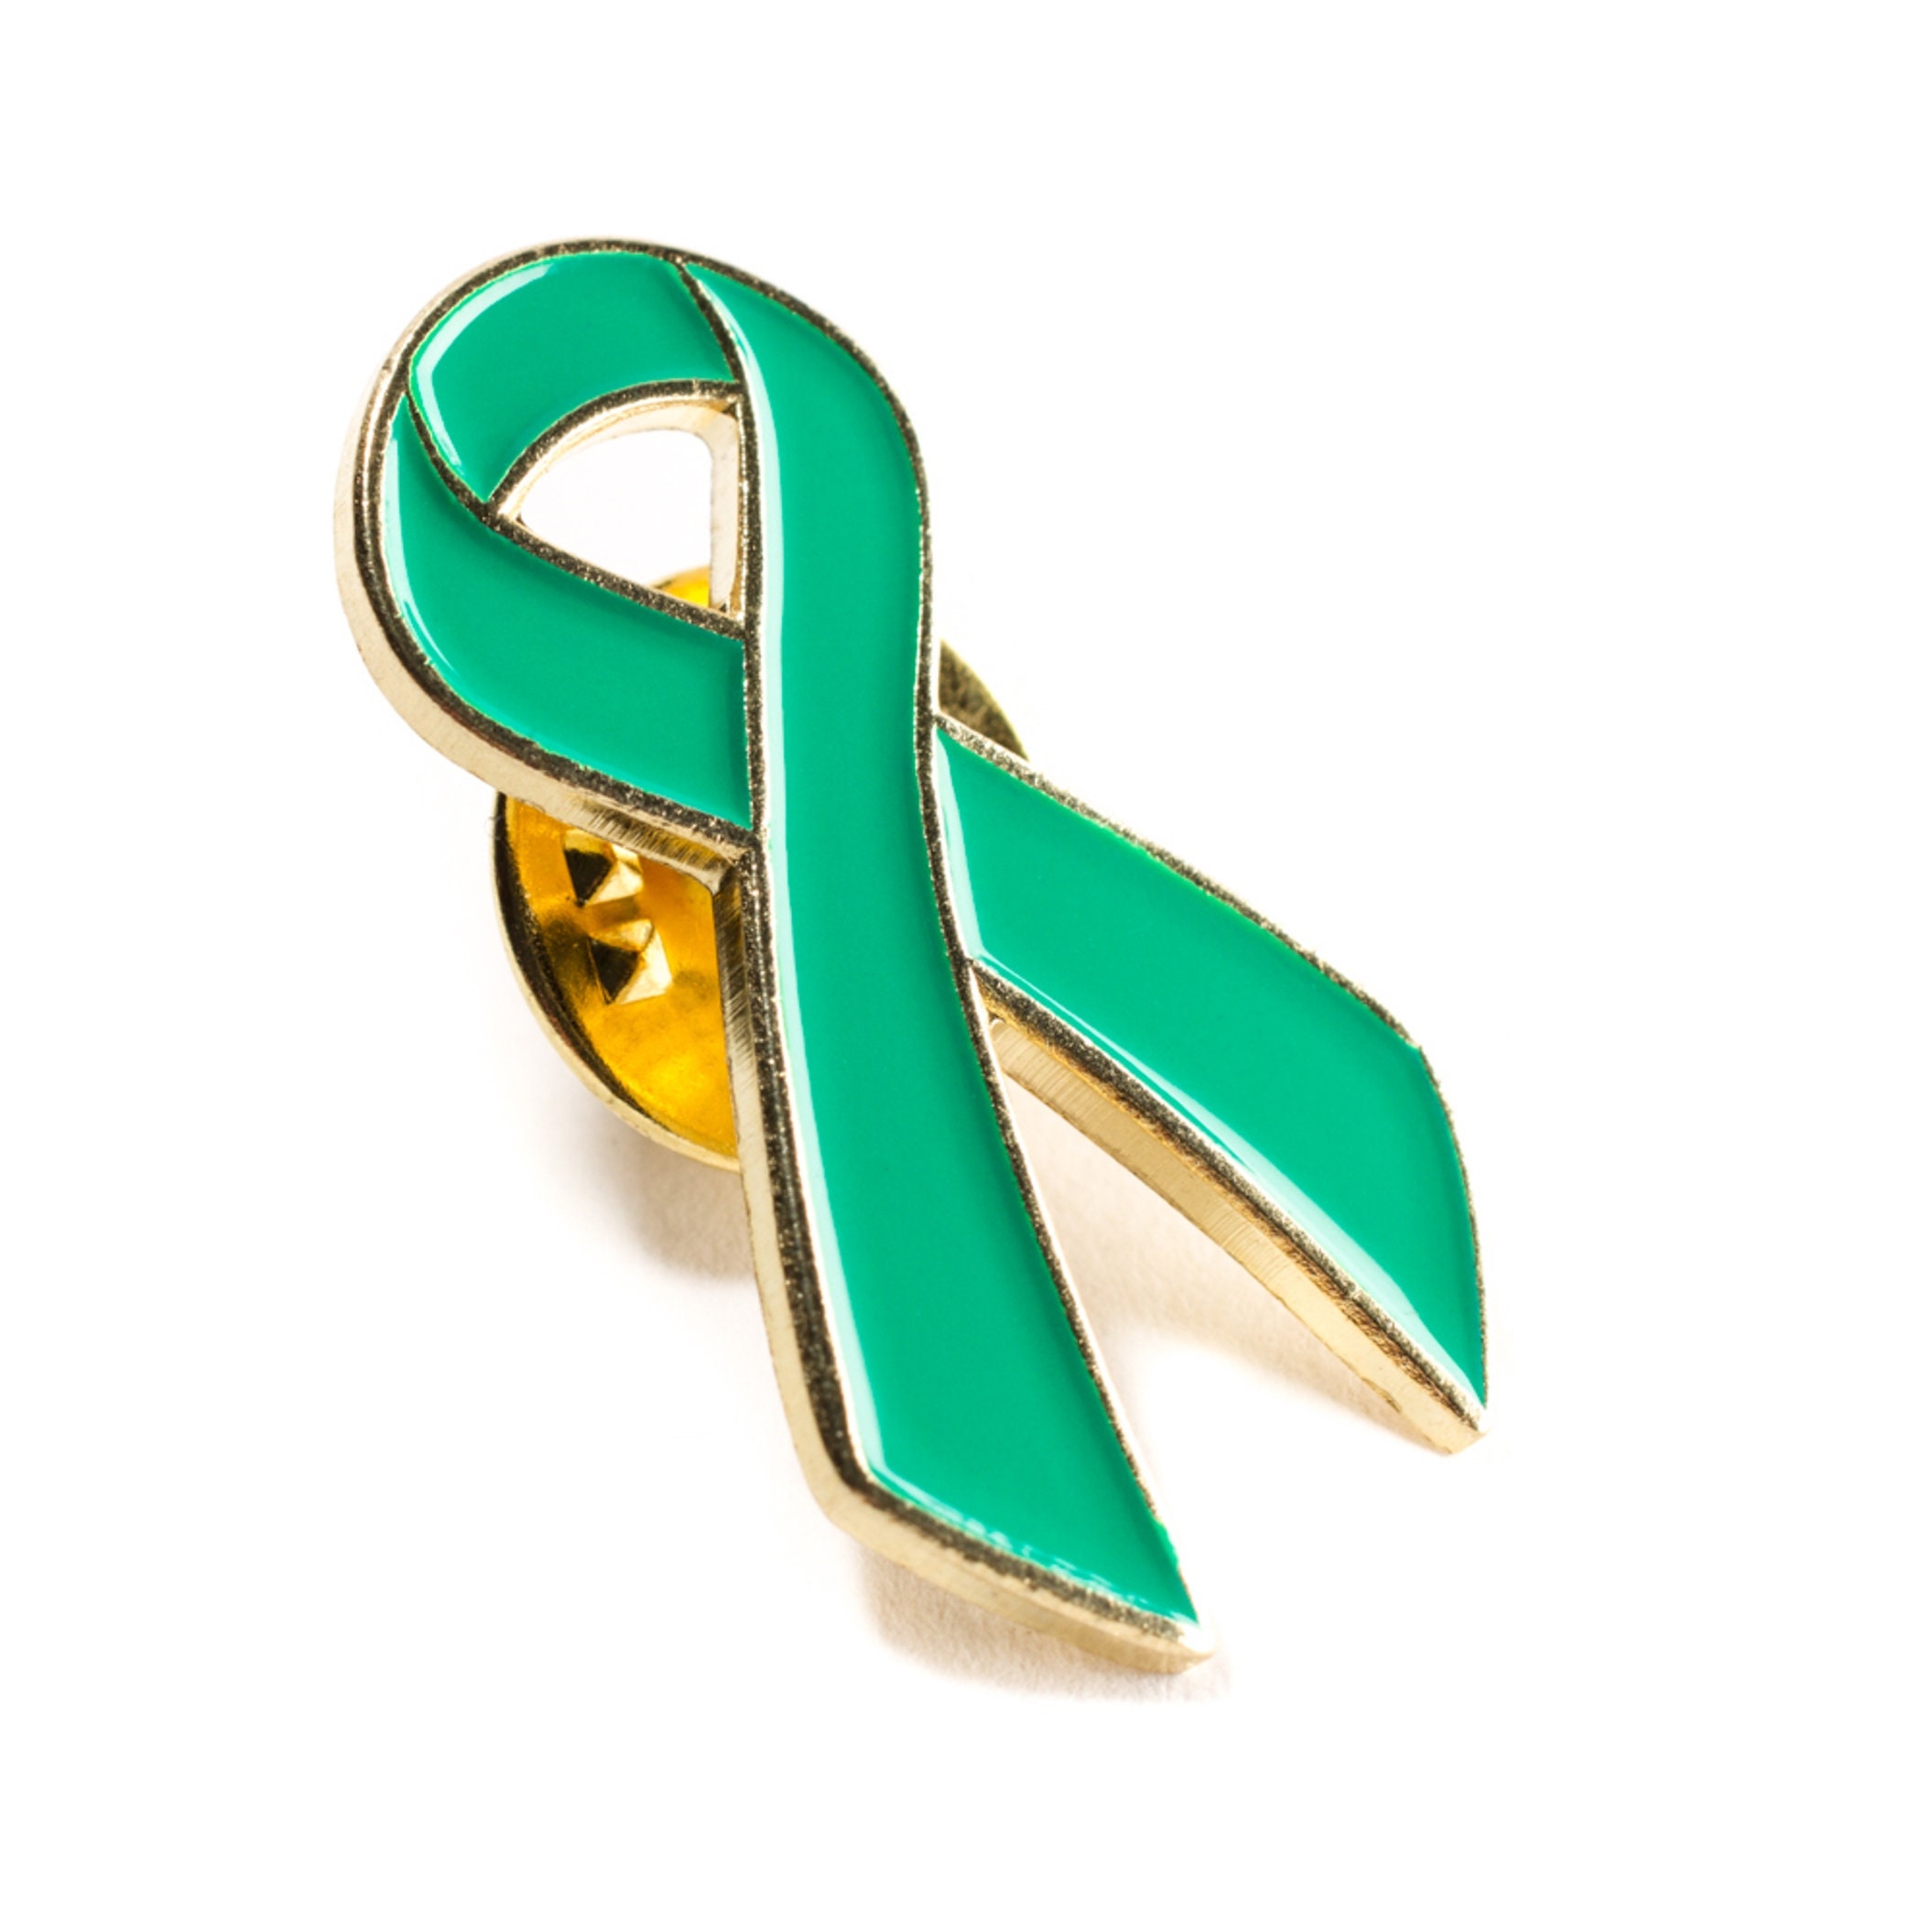 Mental Health Awareness Metal Pin Badge Uk Company Free Etsy